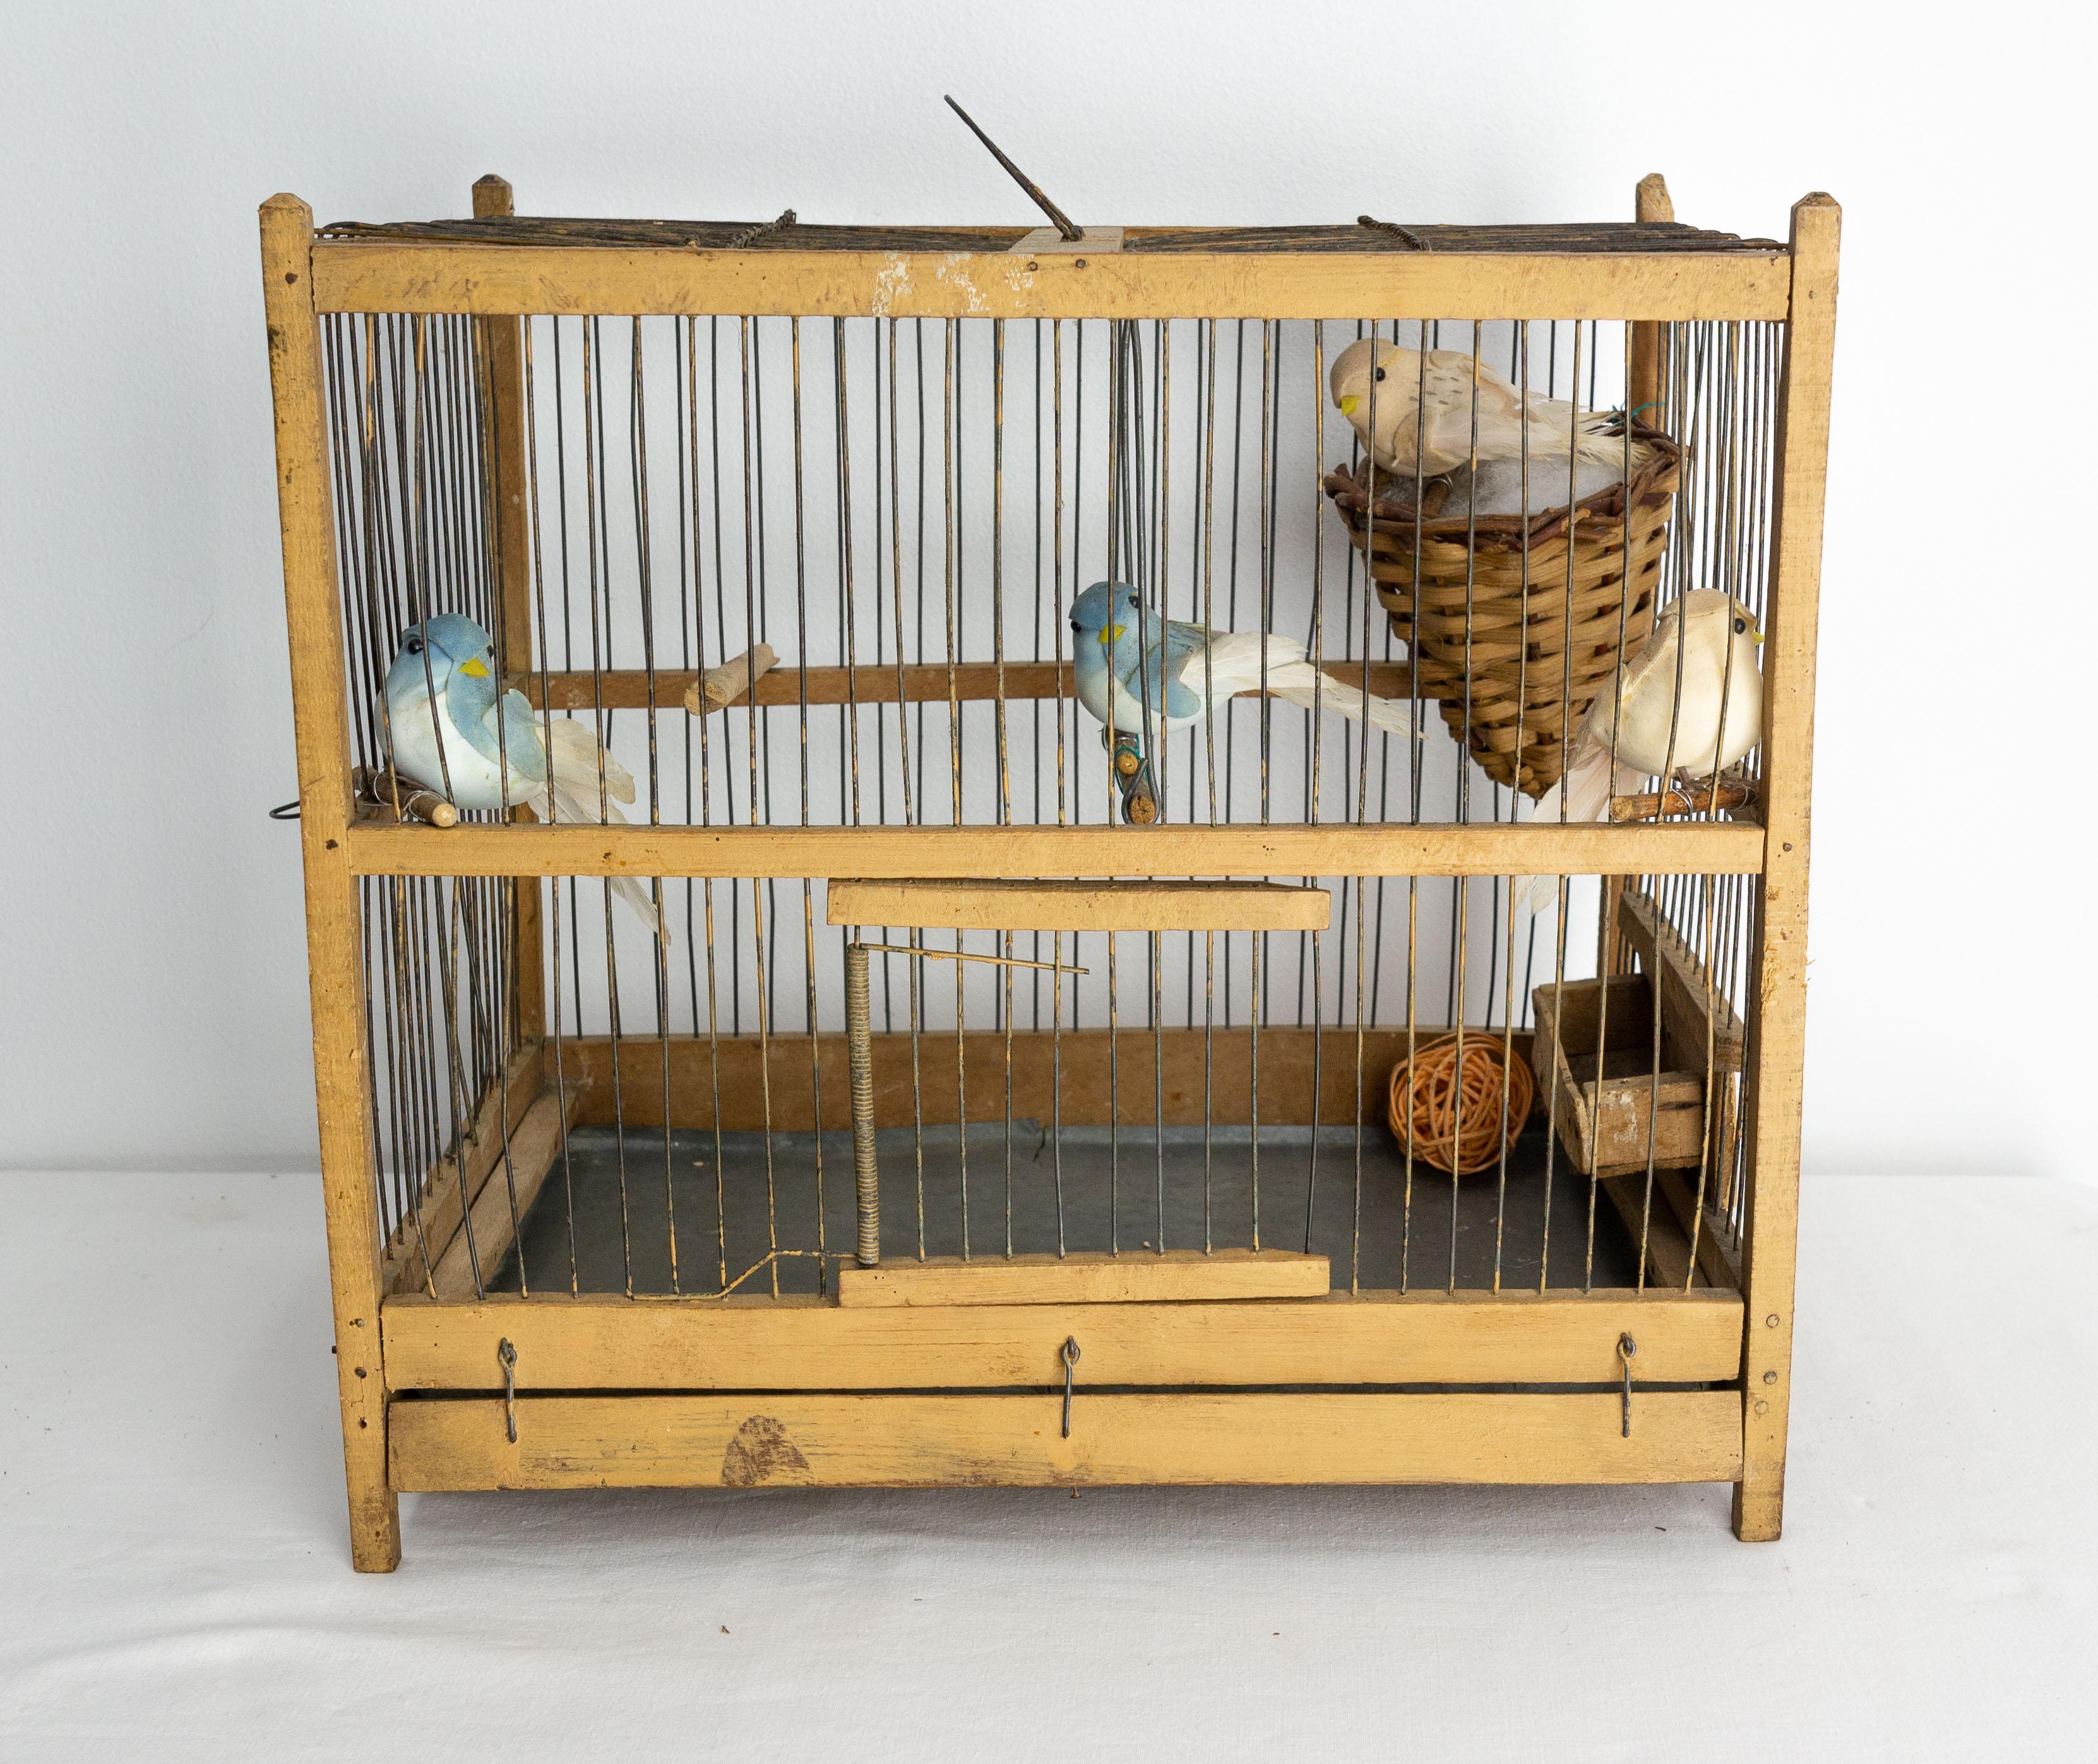 Cage à oiseaux française décorée d'oiseaux.
Au fond de la cage est placé un plateau en zinc pour faciliter le nettoyage. Une mangeoire est amovible, ce qui permet de nourrir les oiseaux sans les déranger.
La décoration a été ajoutée récemment et